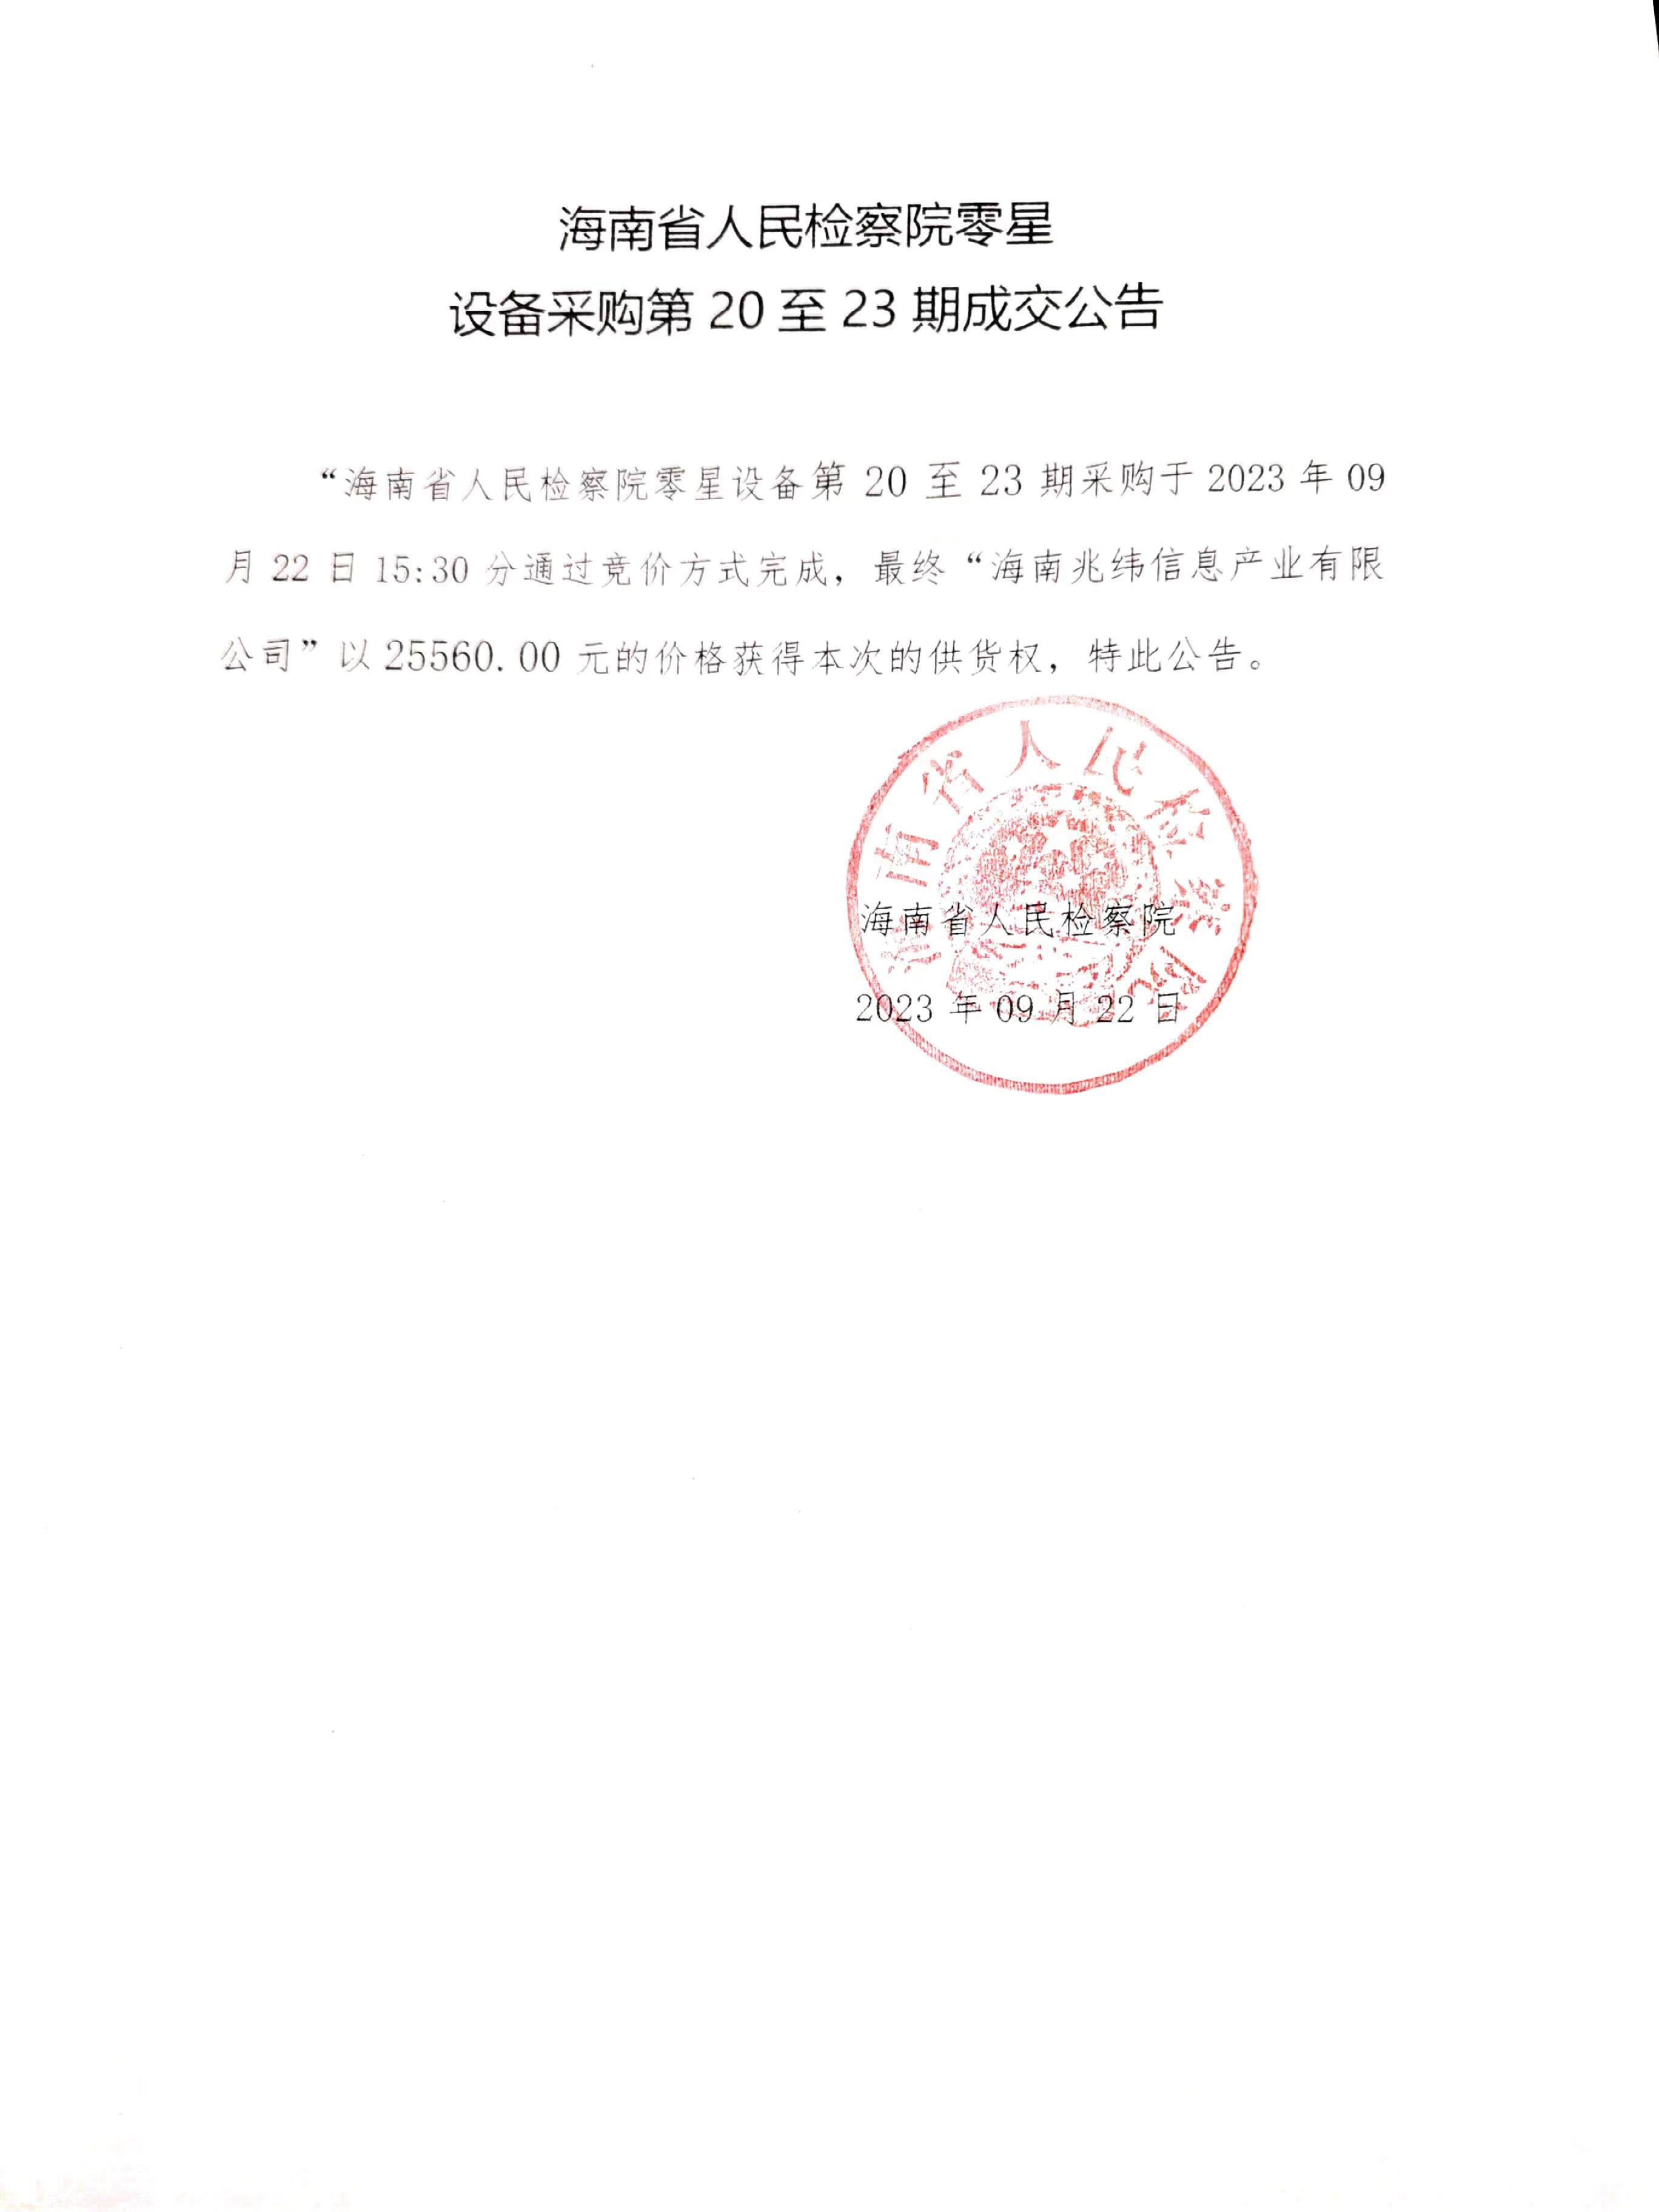 海南省人民检察院零星设备采购第20至23期成交公告.jpg